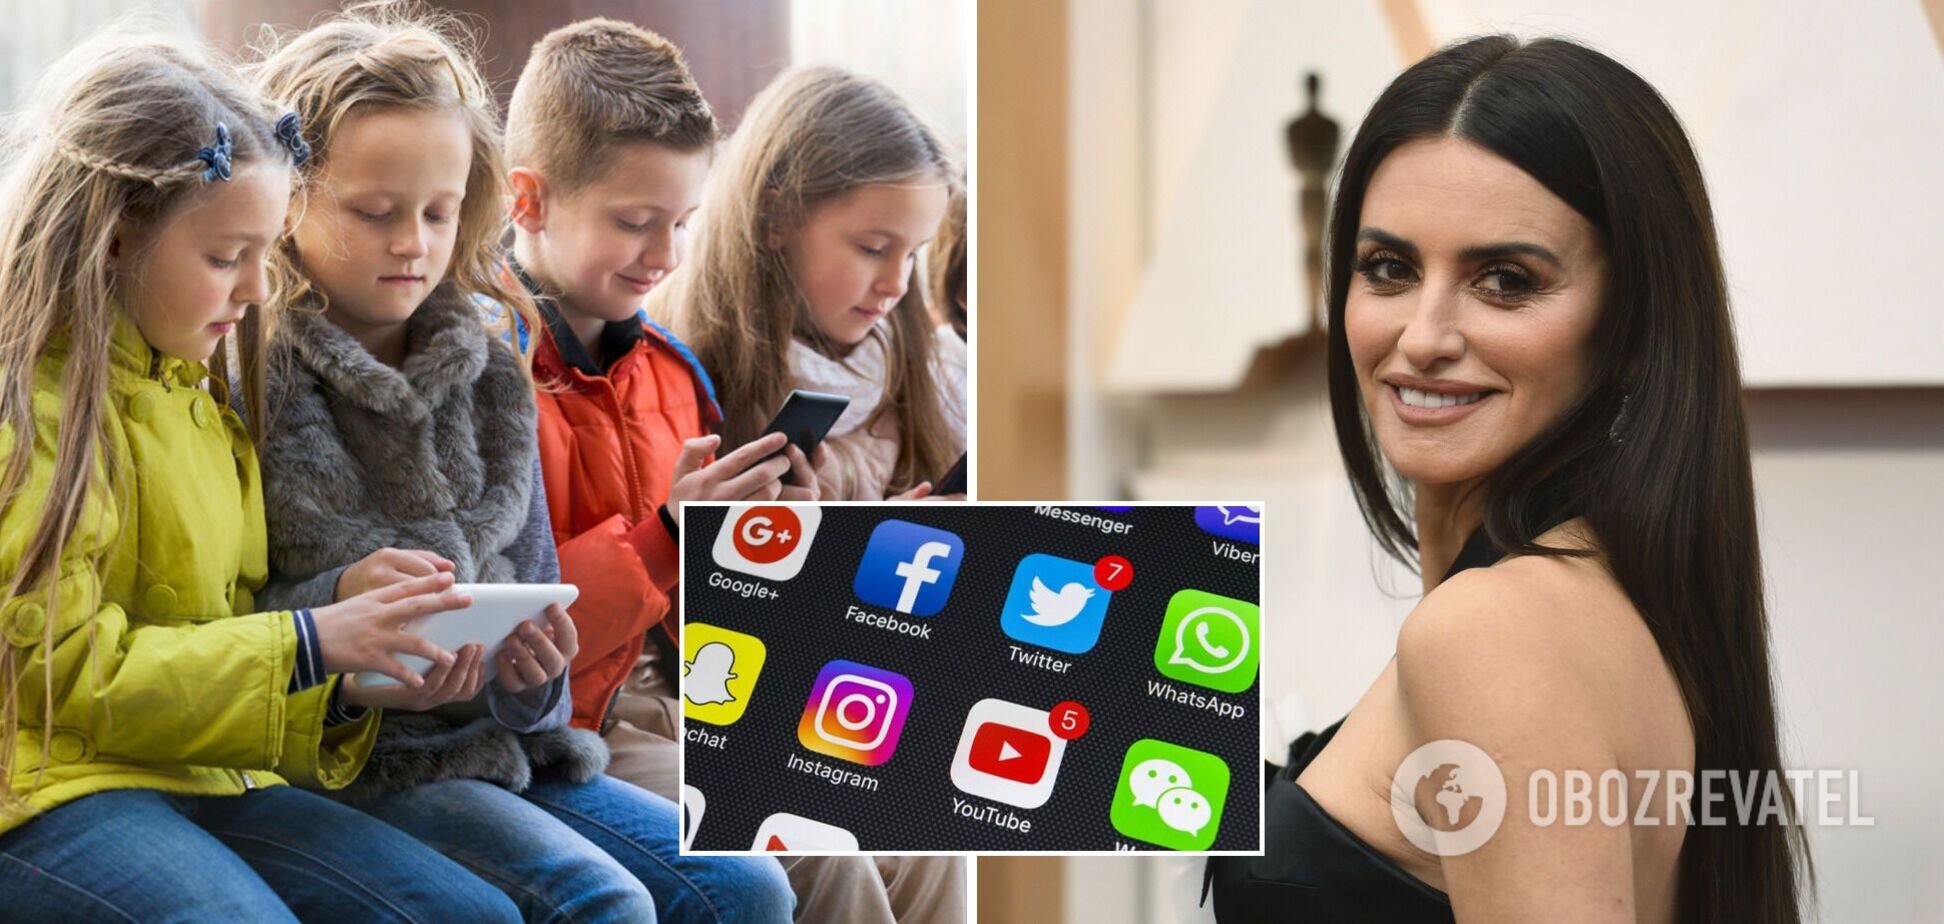 Пенелопа Крус запретила детям пользоваться соцсетями до 16 лет